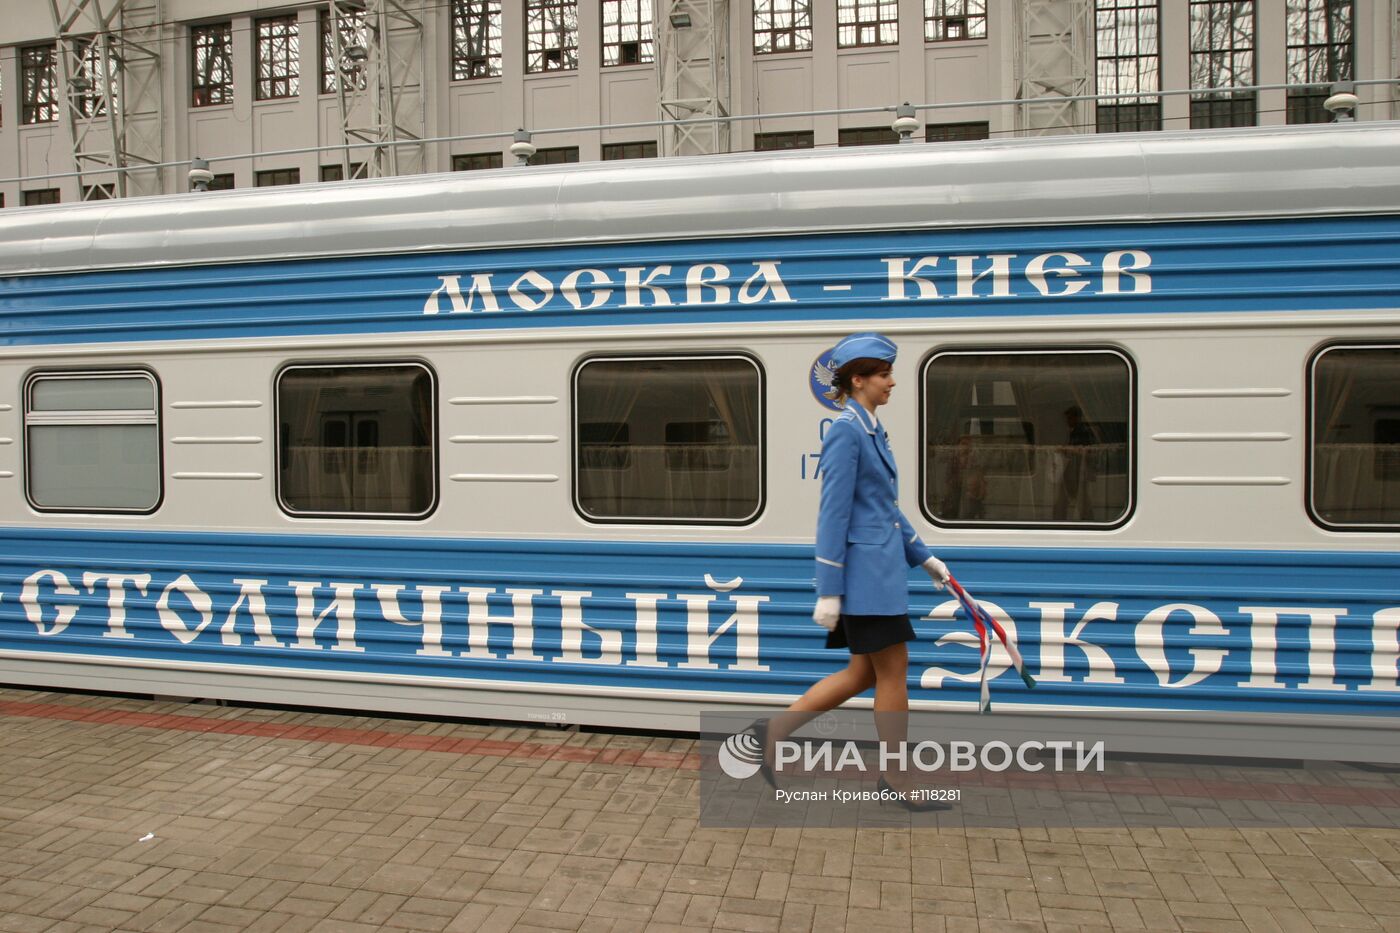 Фирменный поезд "Столичный Экспресс" Москва - Киев